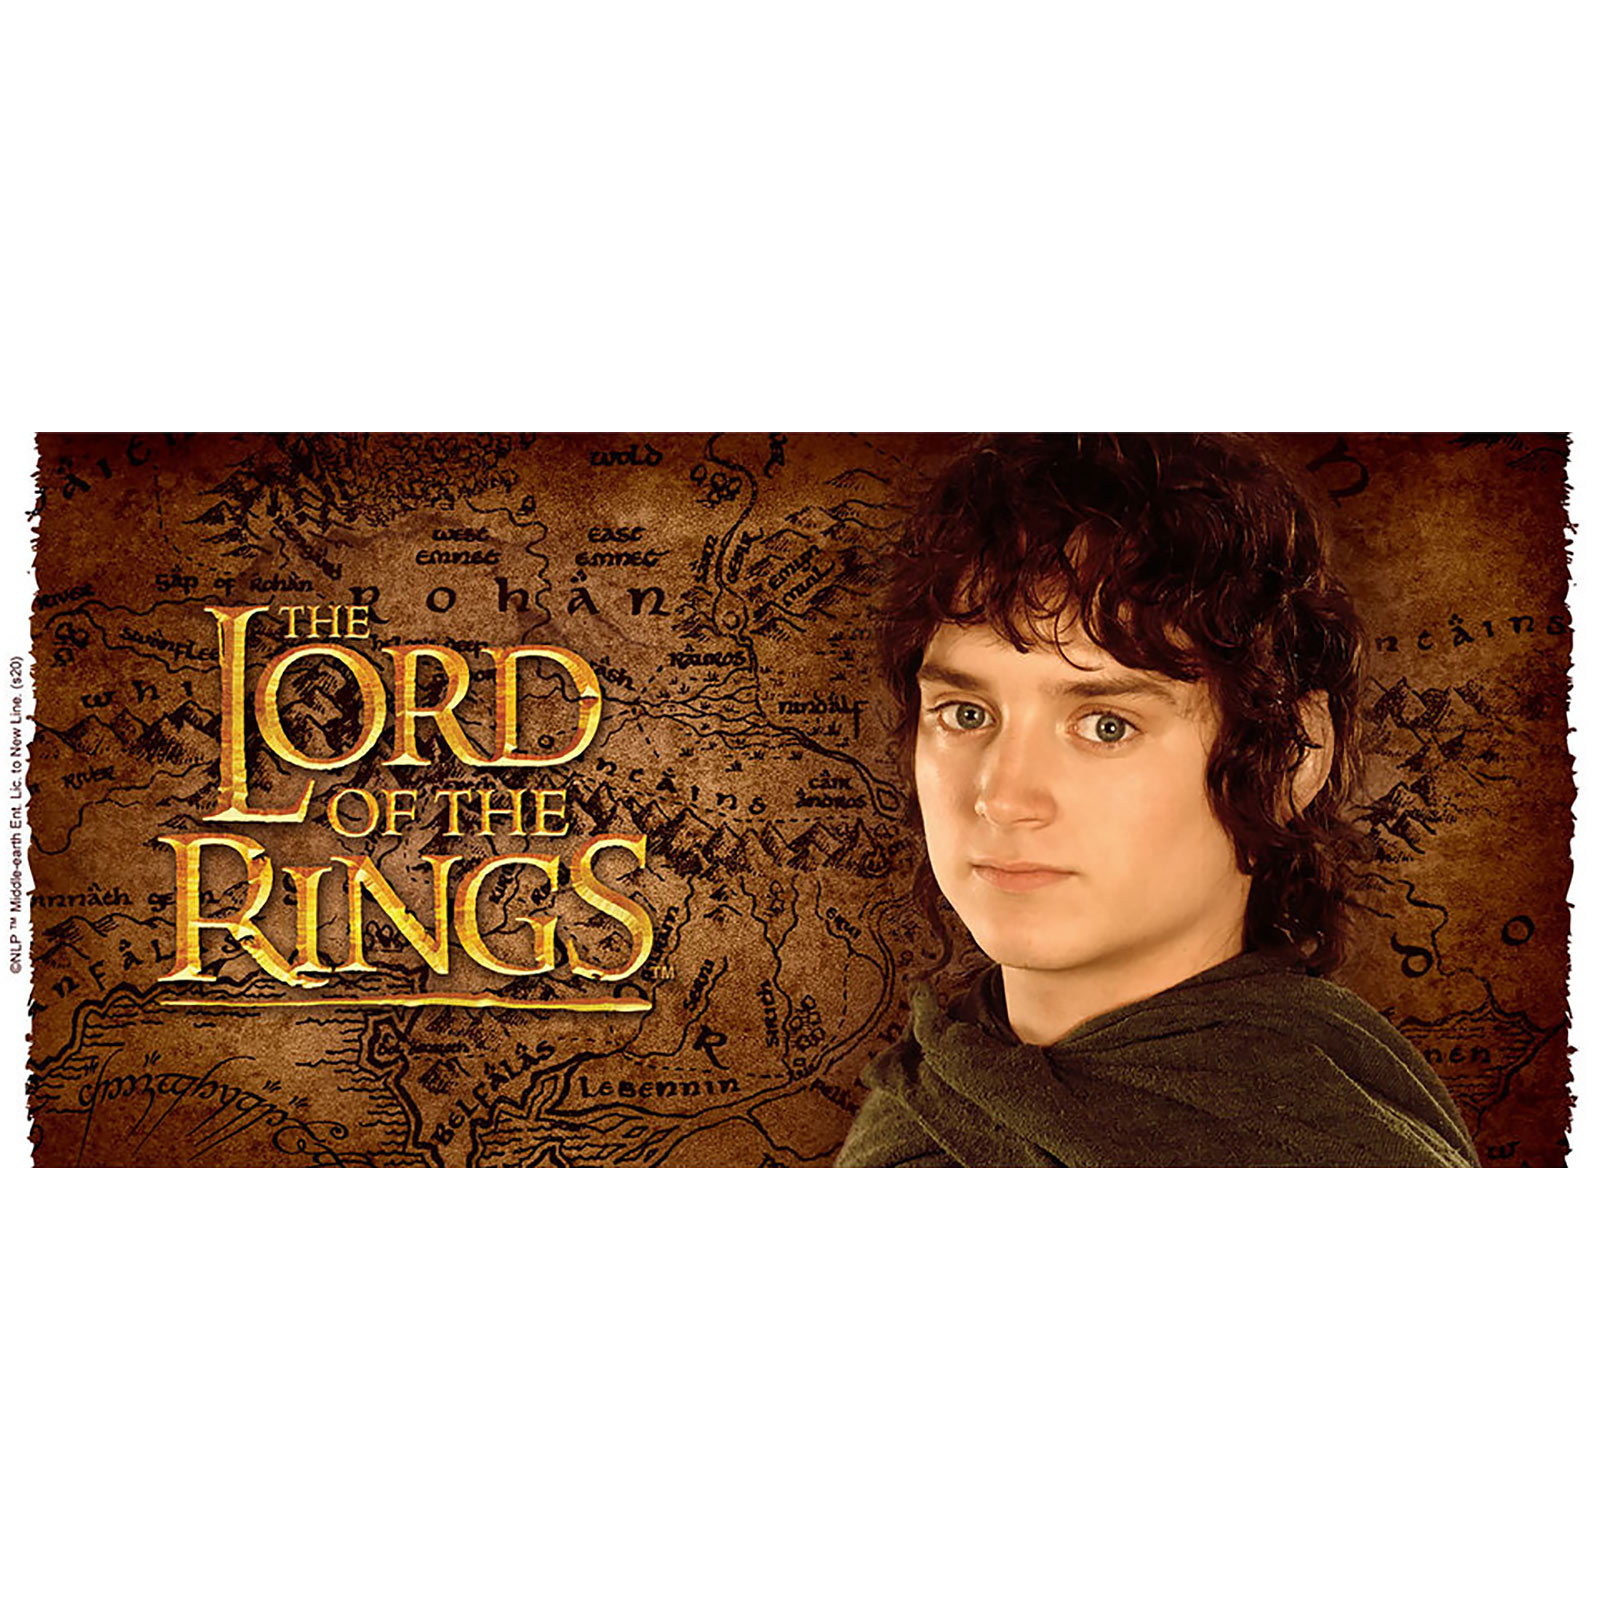 Frodo Verjaardagsmok - 20 jaar Lord of the Rings